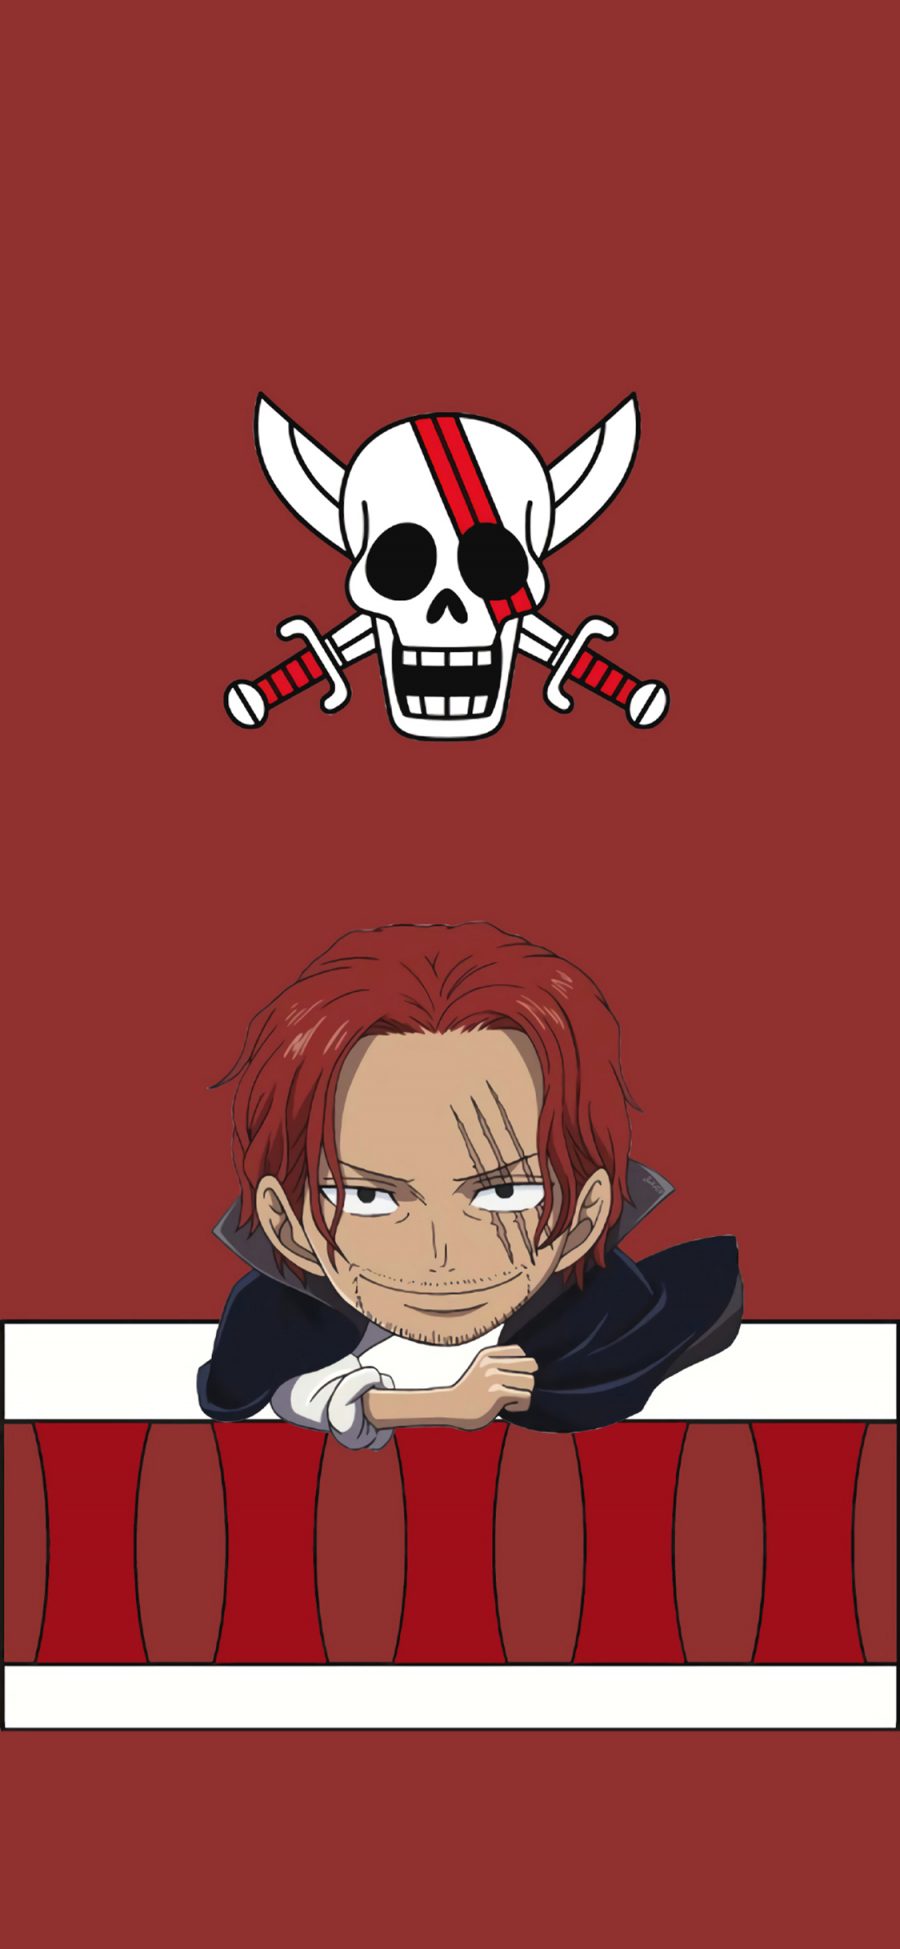 [2436×1125]香克斯 海贼王 红发 日本 漫画 骷髅头 苹果手机动漫壁纸图片